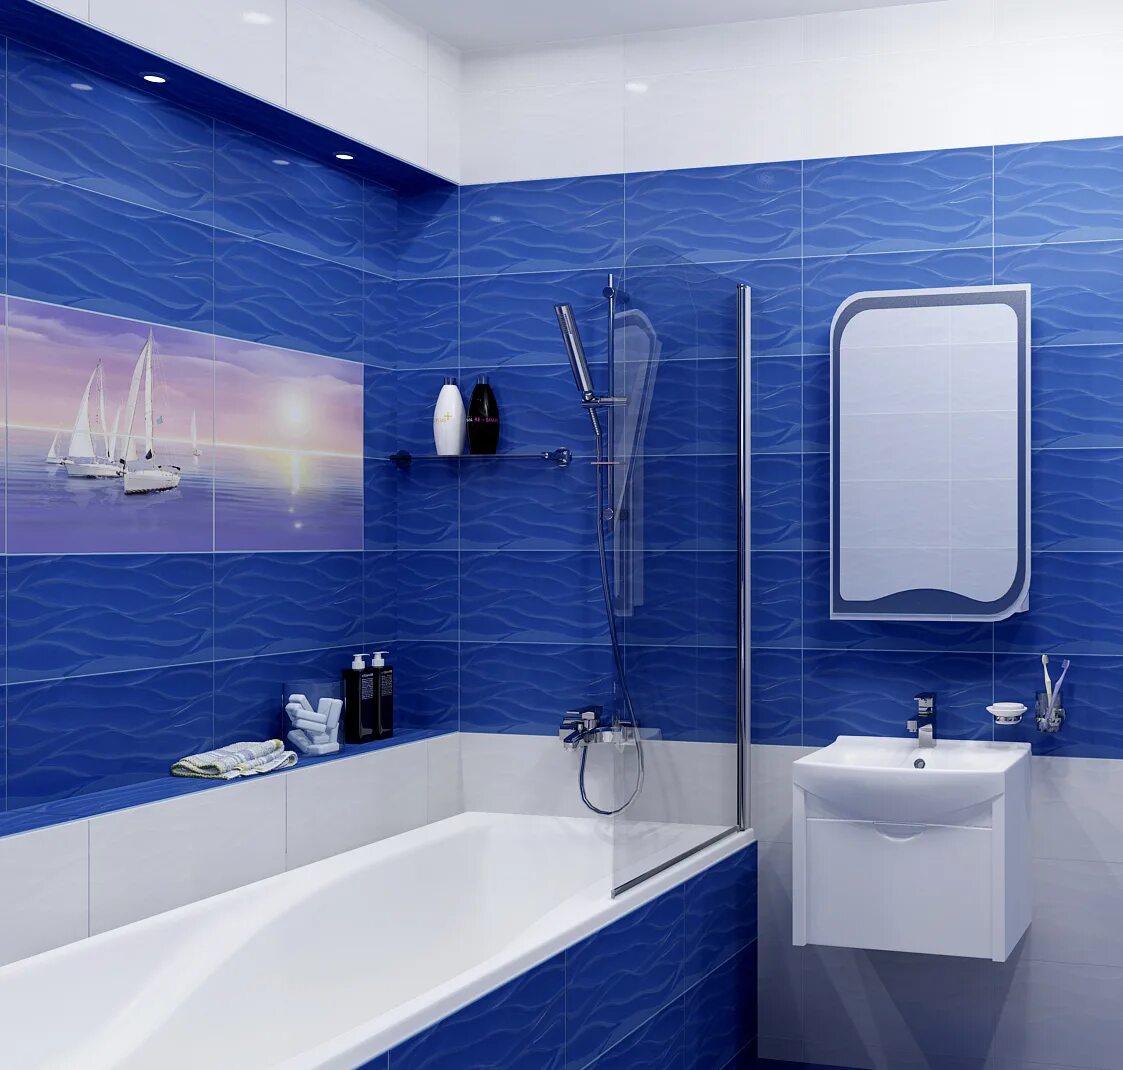 Панельная ванная комната. Синяя ванная комната. Ванная в синем цвете. Плитка для ванной комнаты синяя. Плитка в ванную синяя.